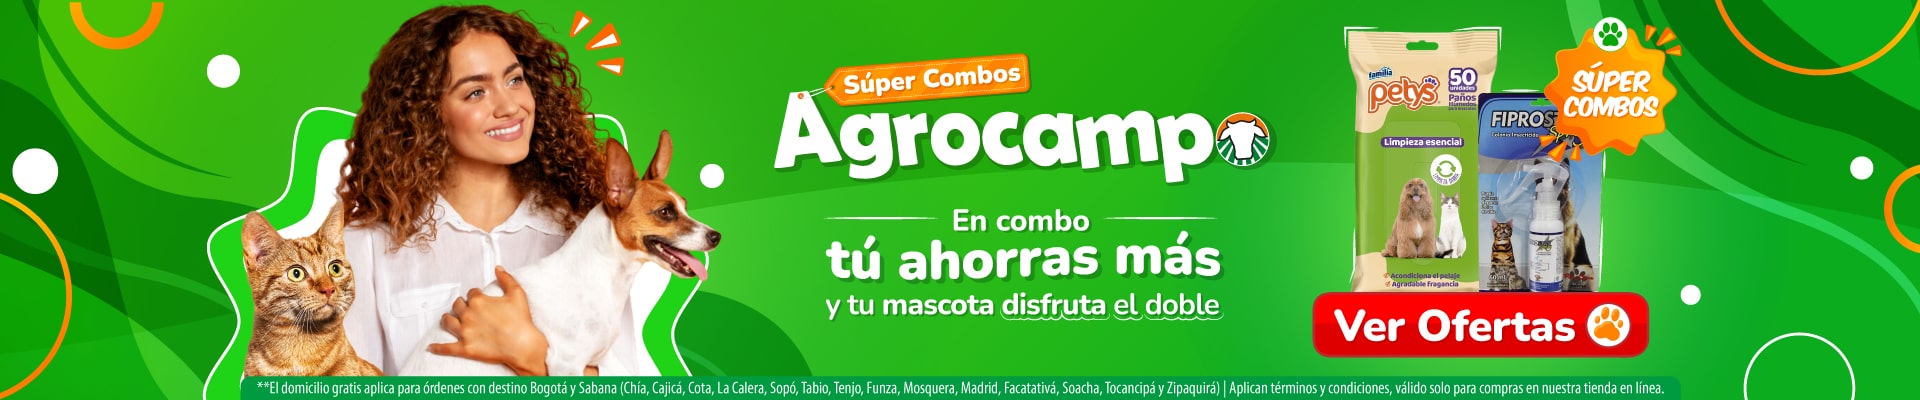 Promociones Agronotas Agrocampo